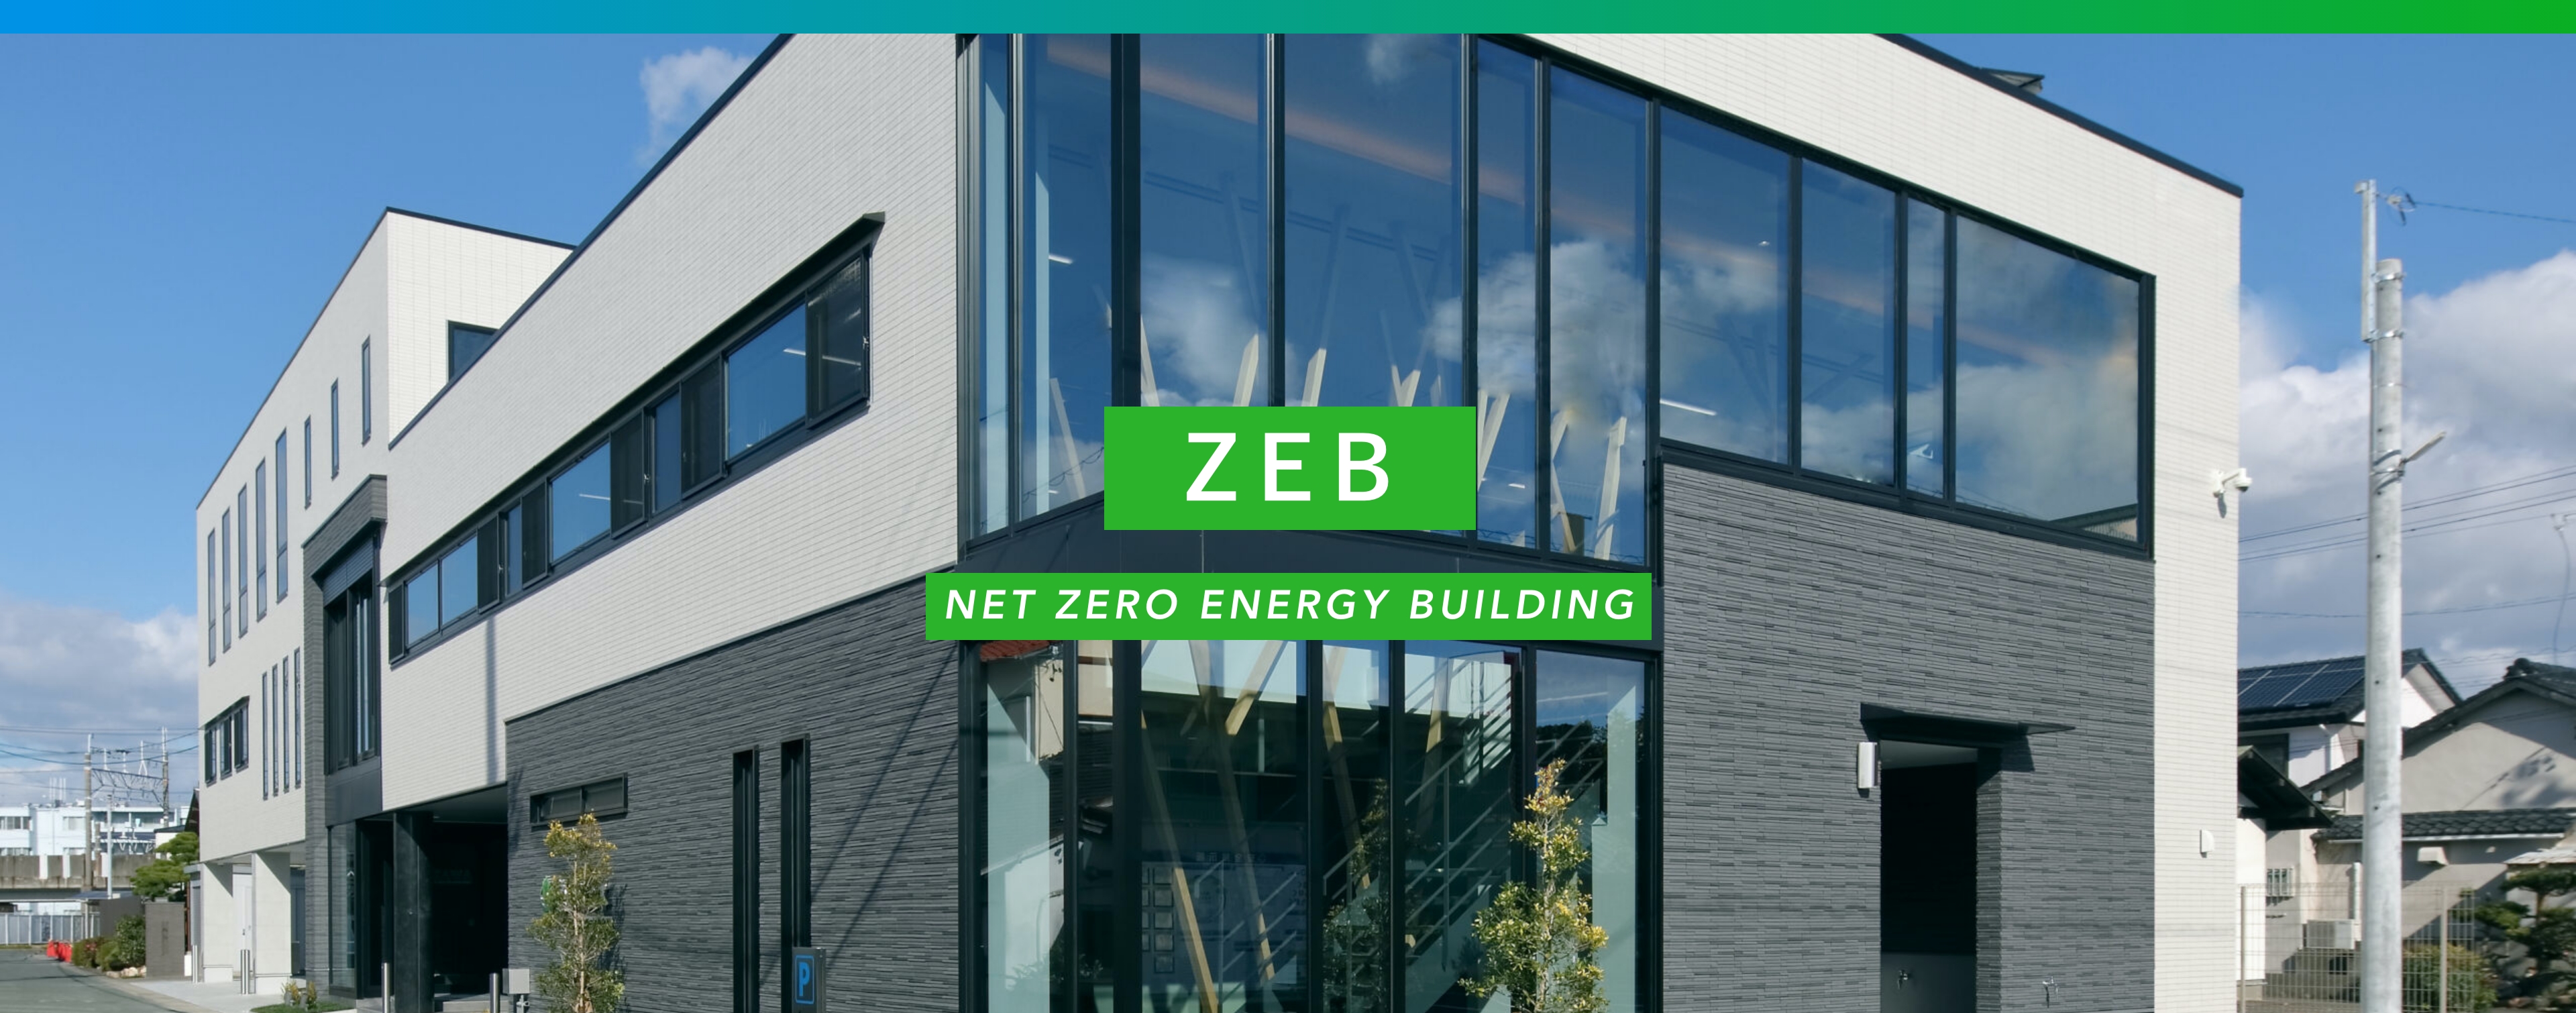 ZEB NET ZERO ENERGY BUILDING